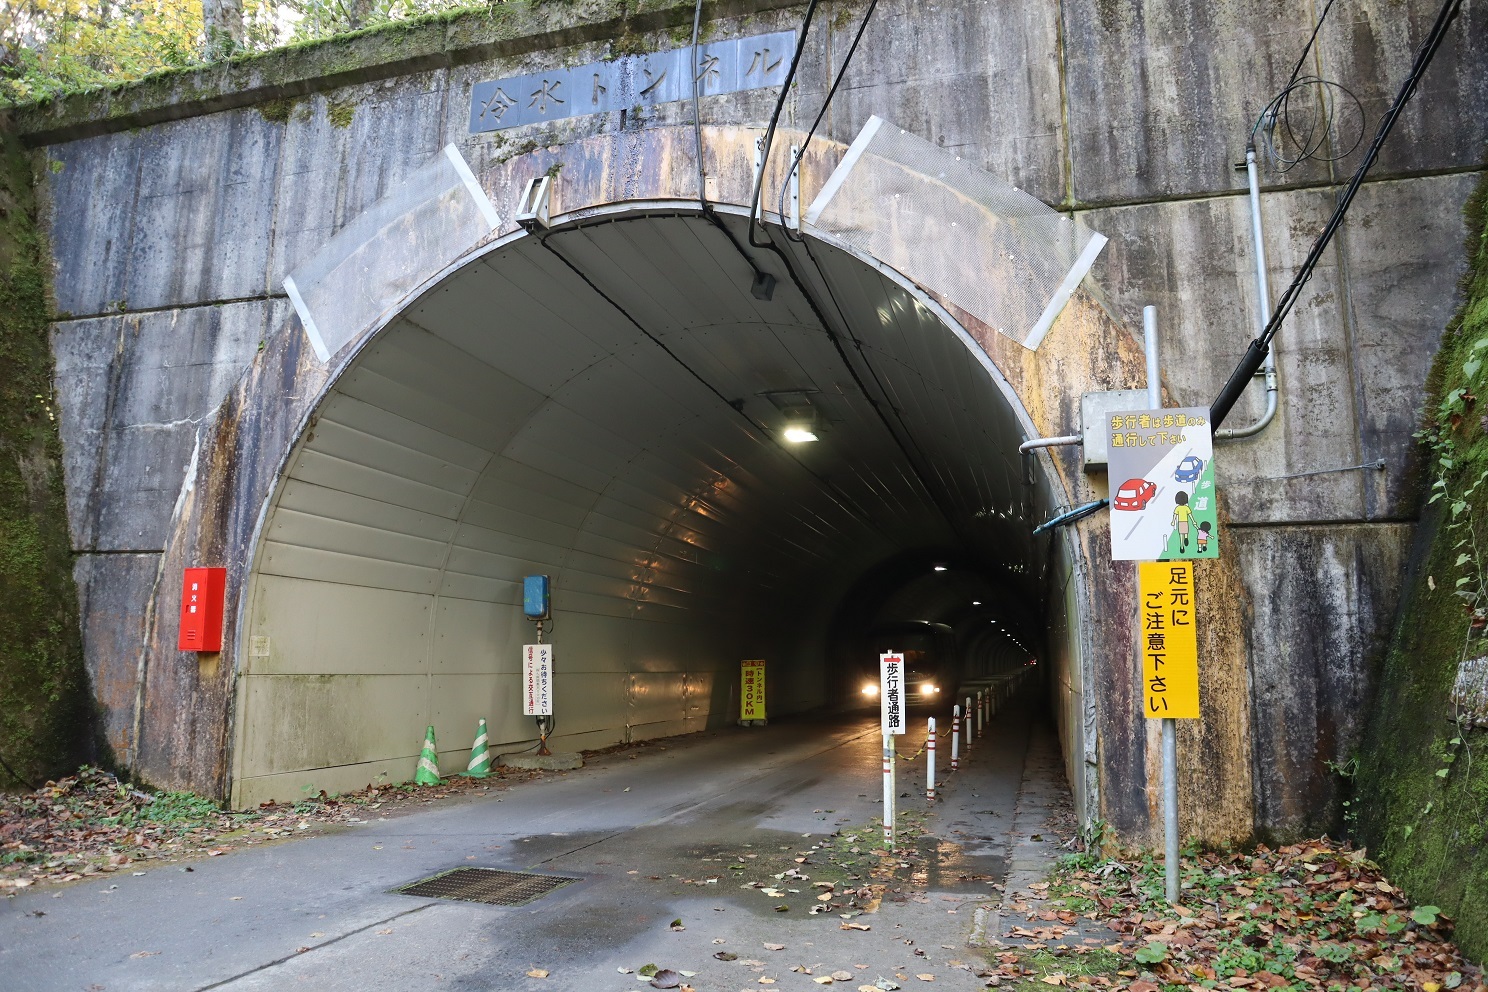 トンネル内は、右側通行となります。通路はしっかりチェーンがかかり、人が往来するための安全対策はされています。